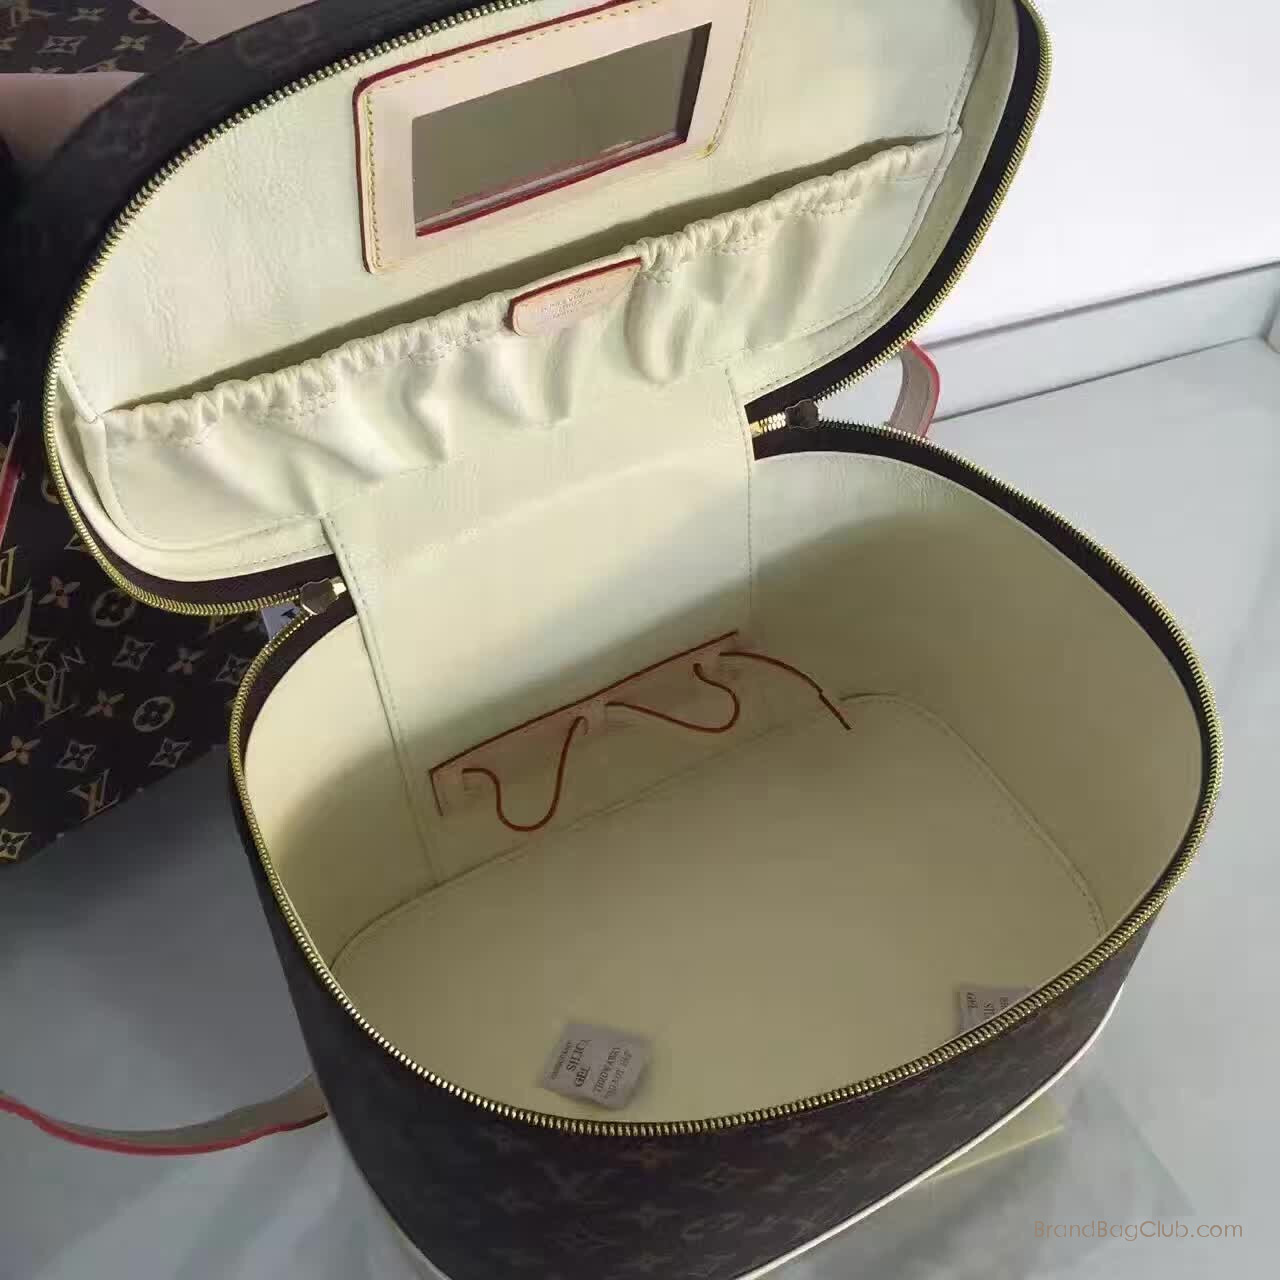 Louis Vuitton Makeup Bag Monogram Cosmetic Handbag Vanity lv bags outlet Replica Bags M47280 sale